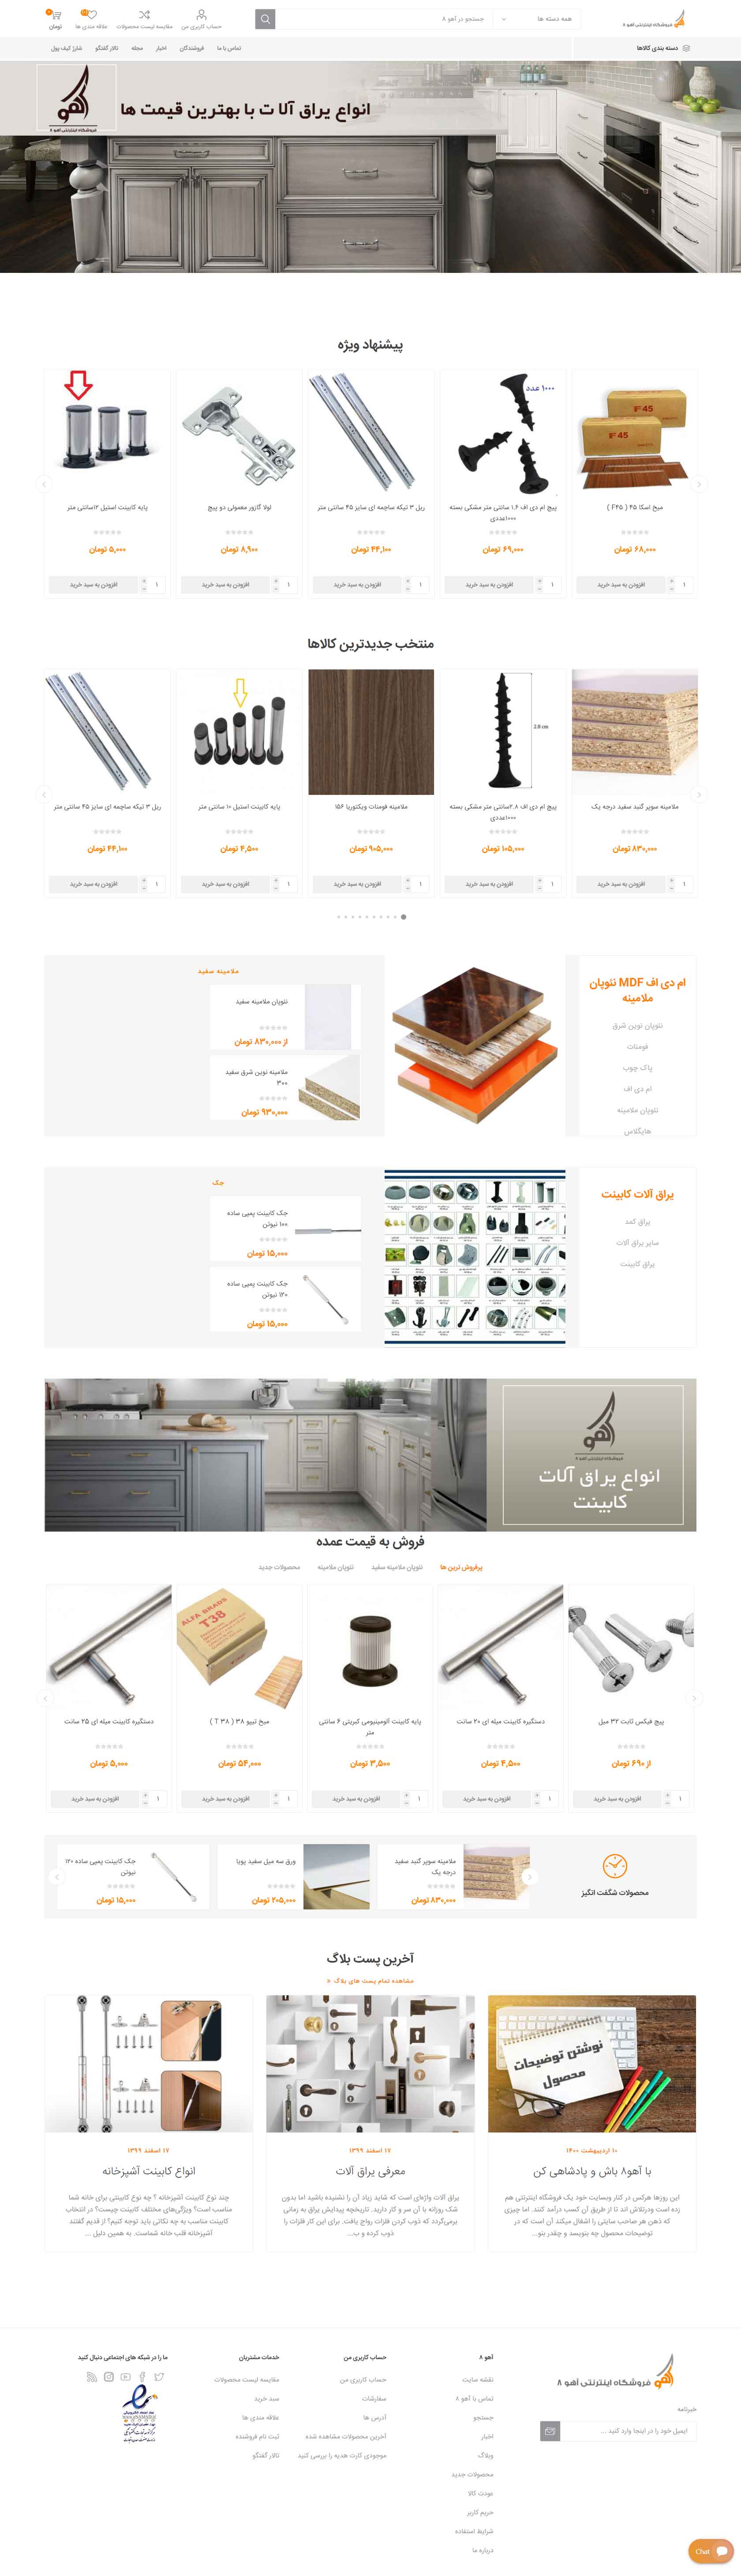 طراحی فروشگاه اینترنتی آهو8